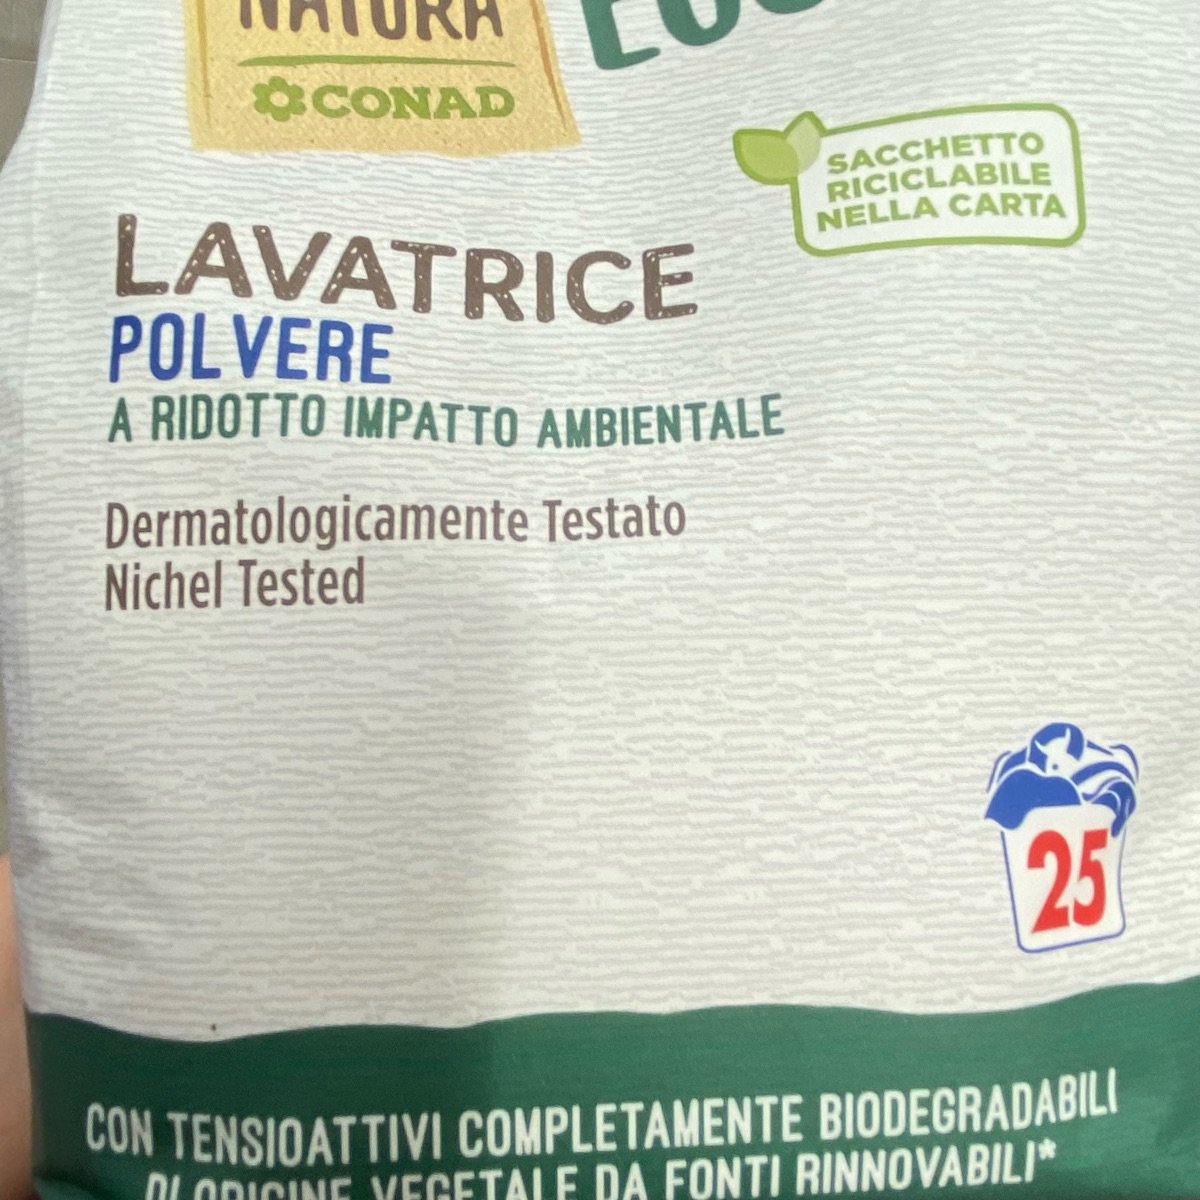 Verso Natura Eco Conad Lavatrice polvere Reviews | abillion